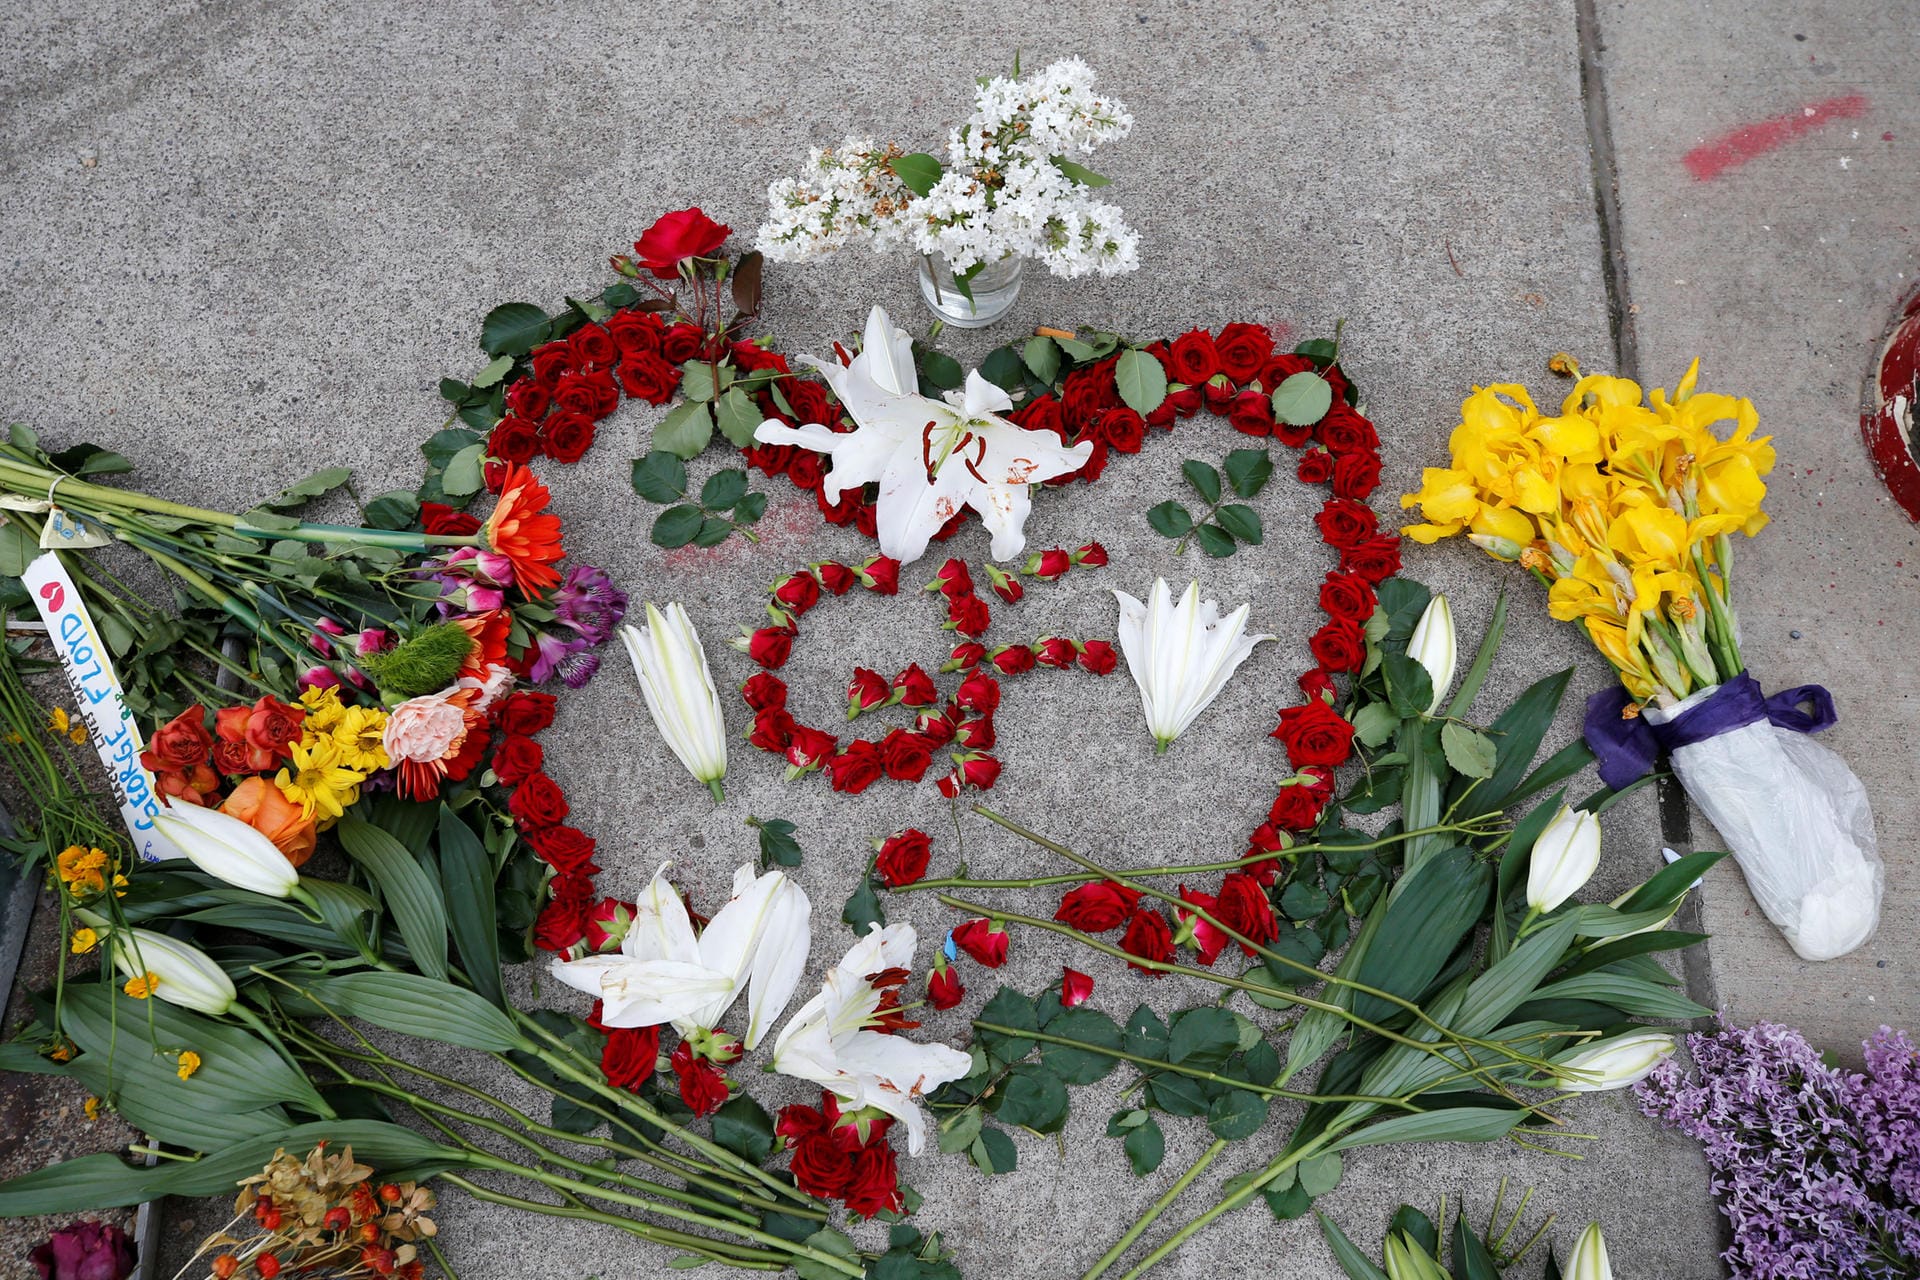 Blumen erinnern an George Floyd, der bei einer Festnahme ums Leben kam.